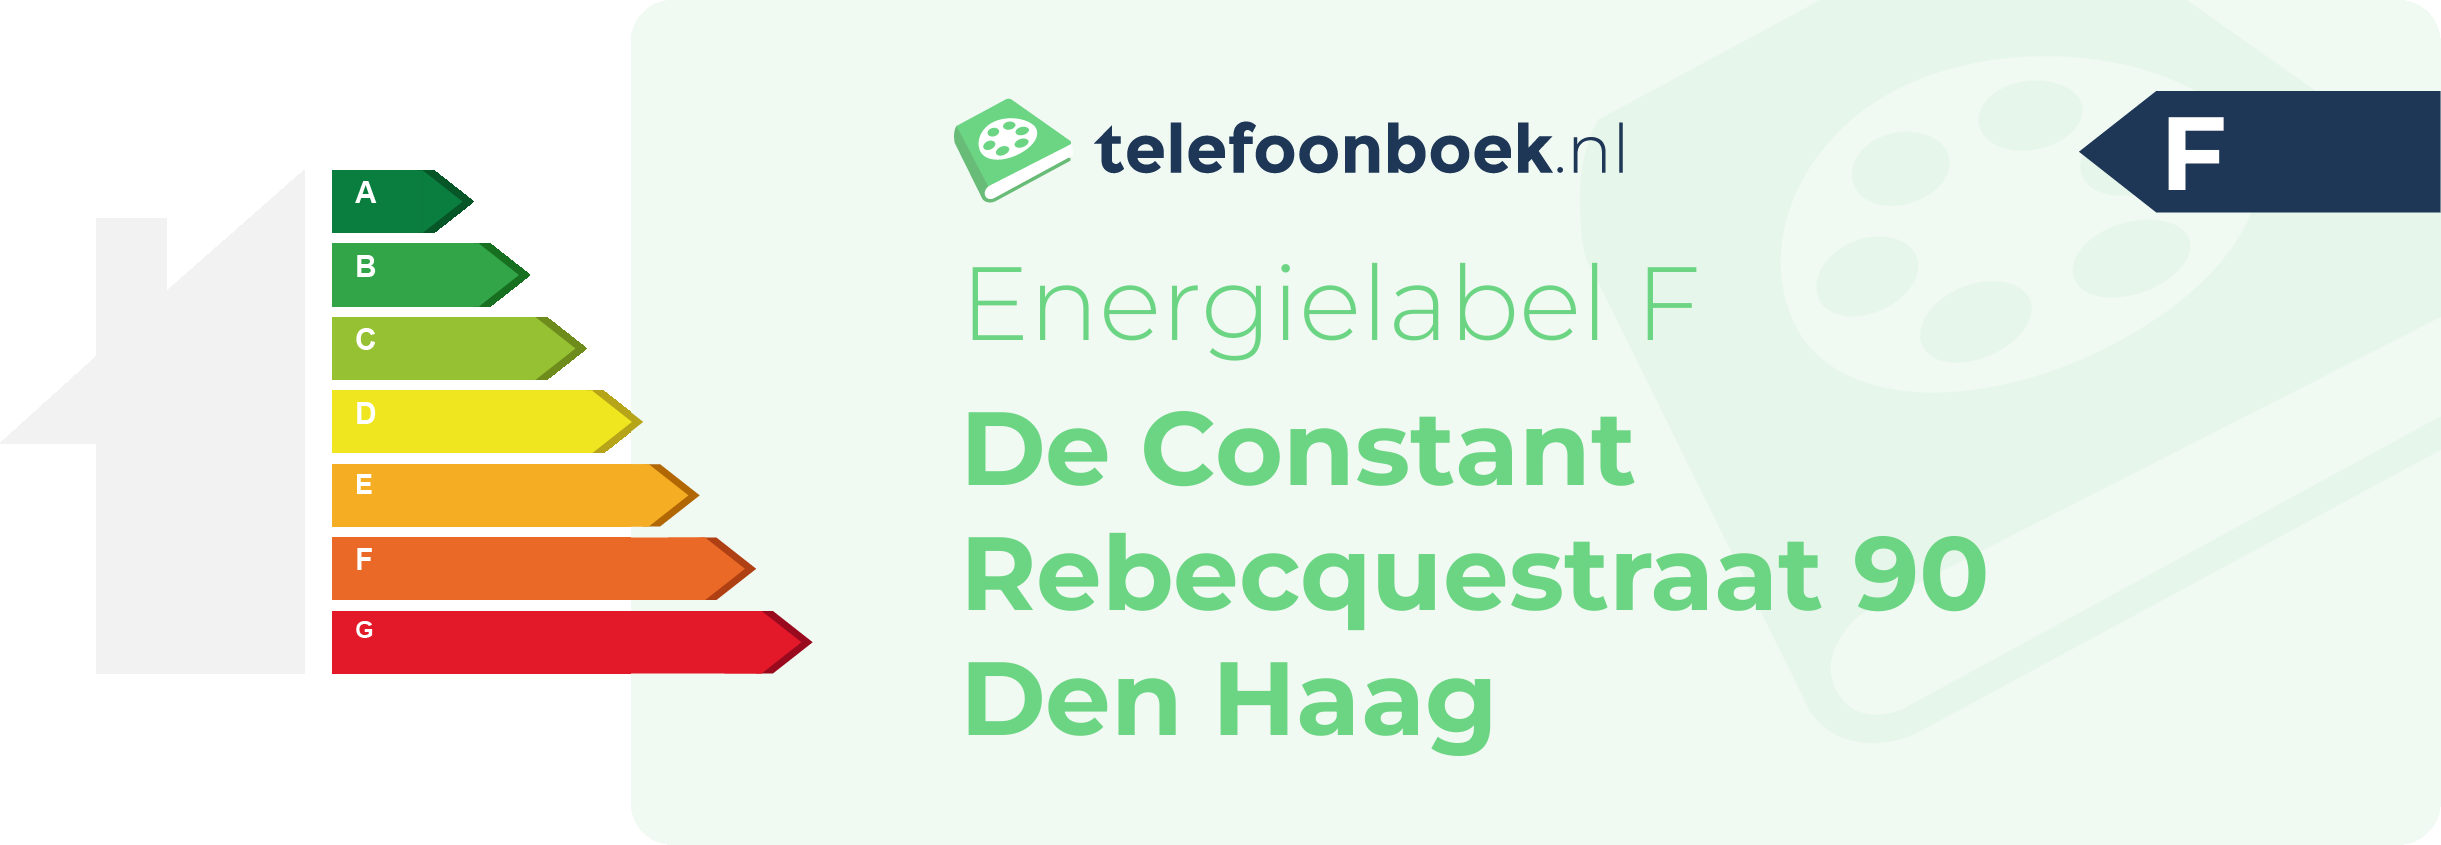 Energielabel De Constant Rebecquestraat 90 Den Haag